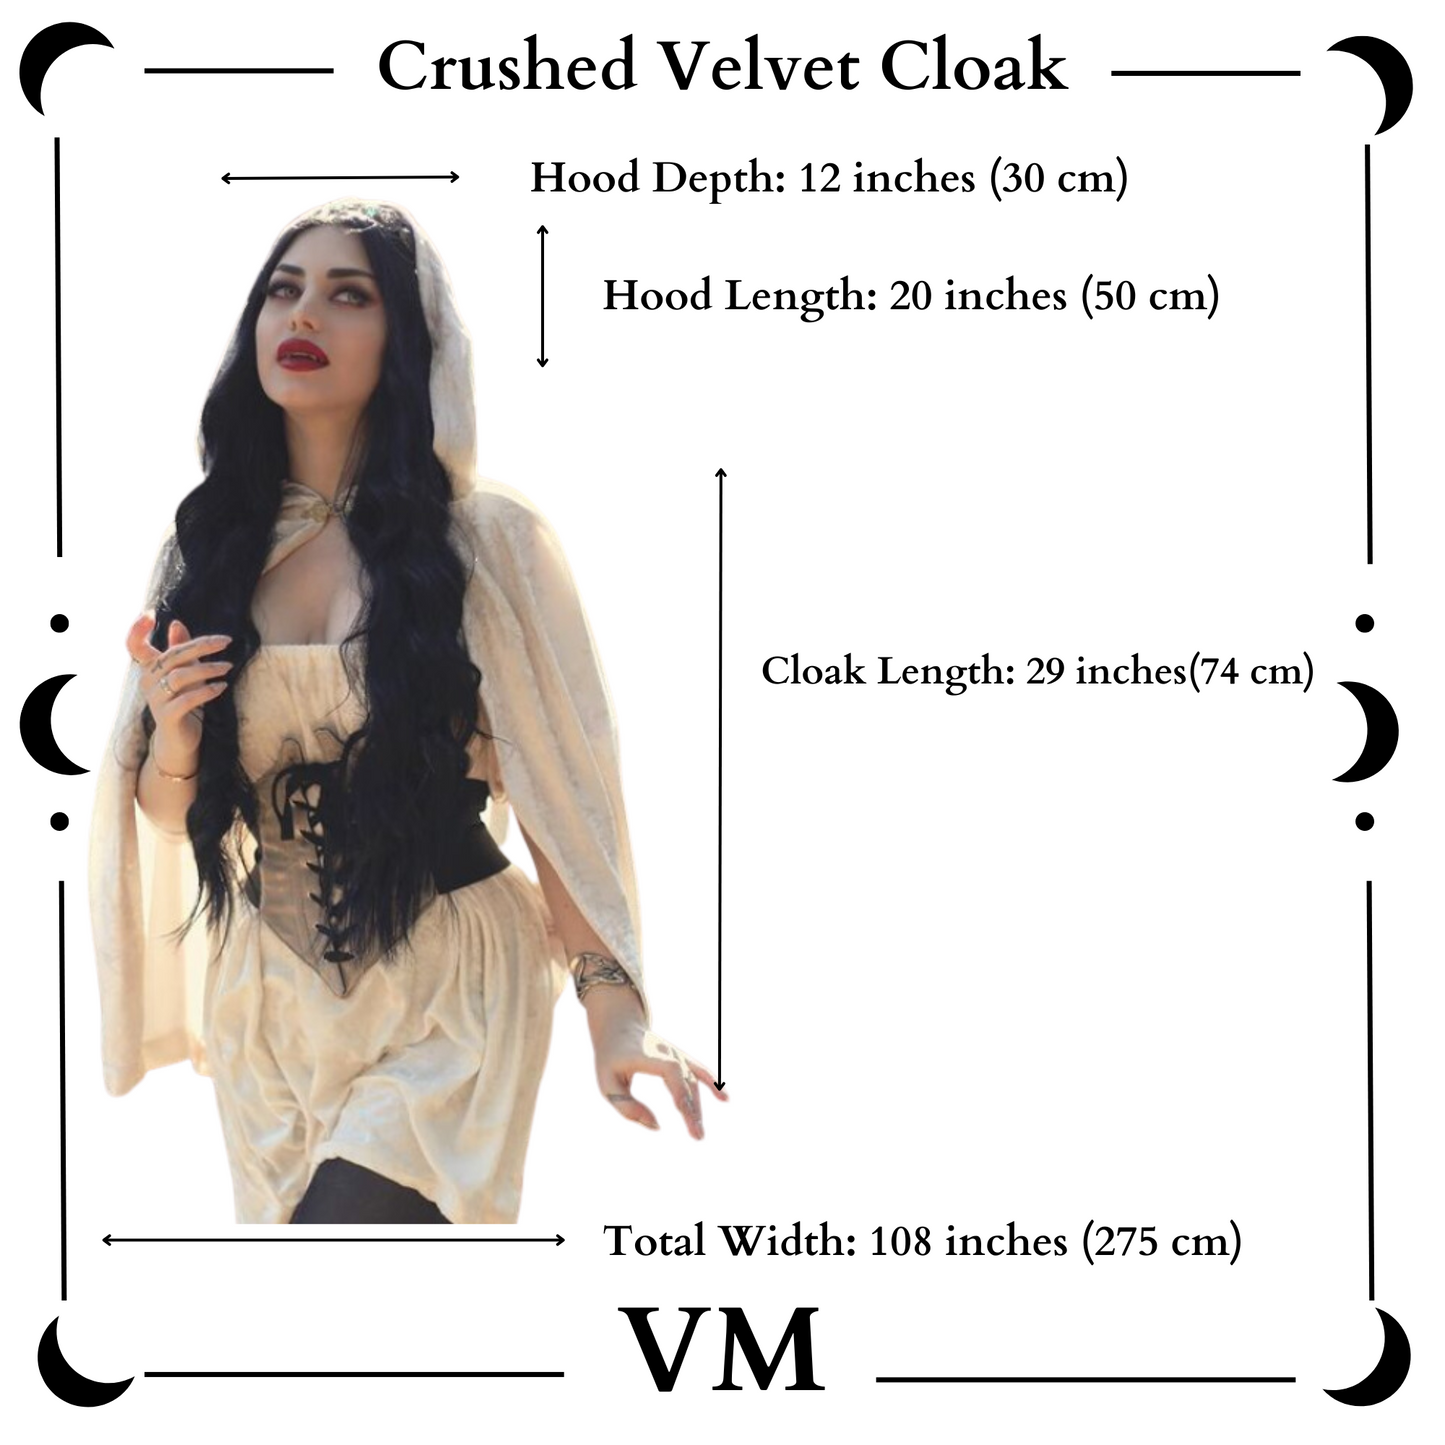 The VM Short Crushed Velvet Cloak